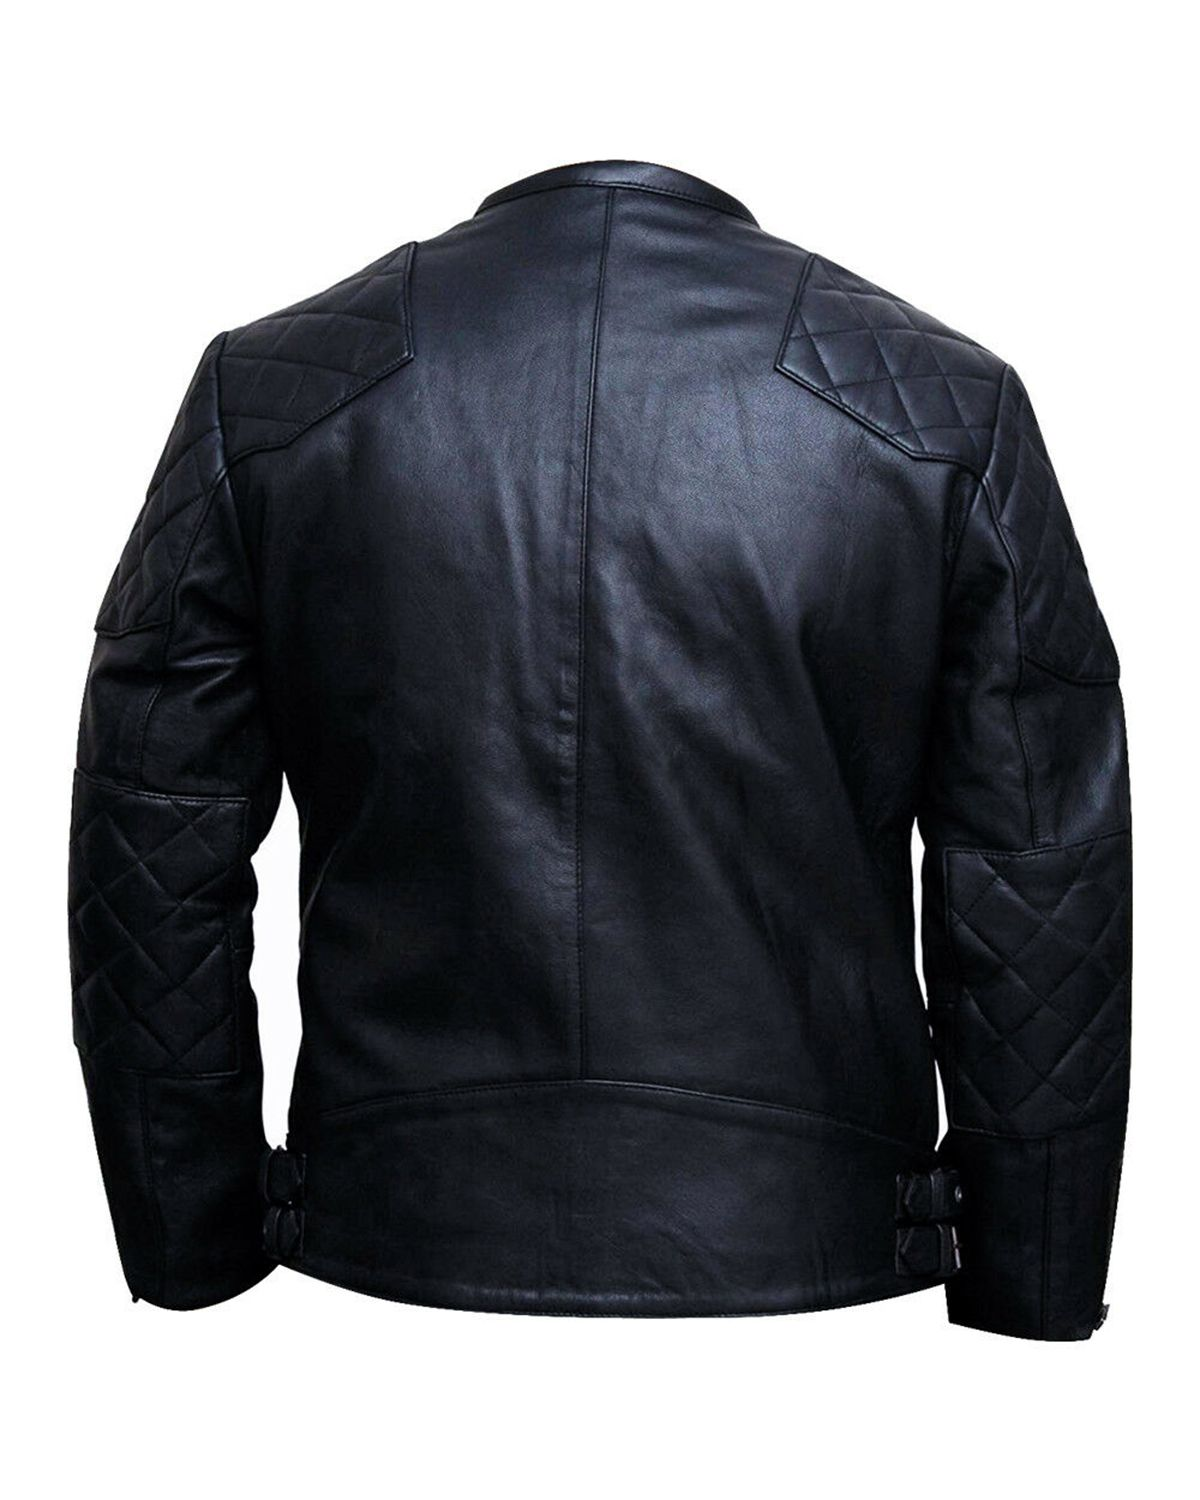 Elite Men's Quilted Black Leather Jacket